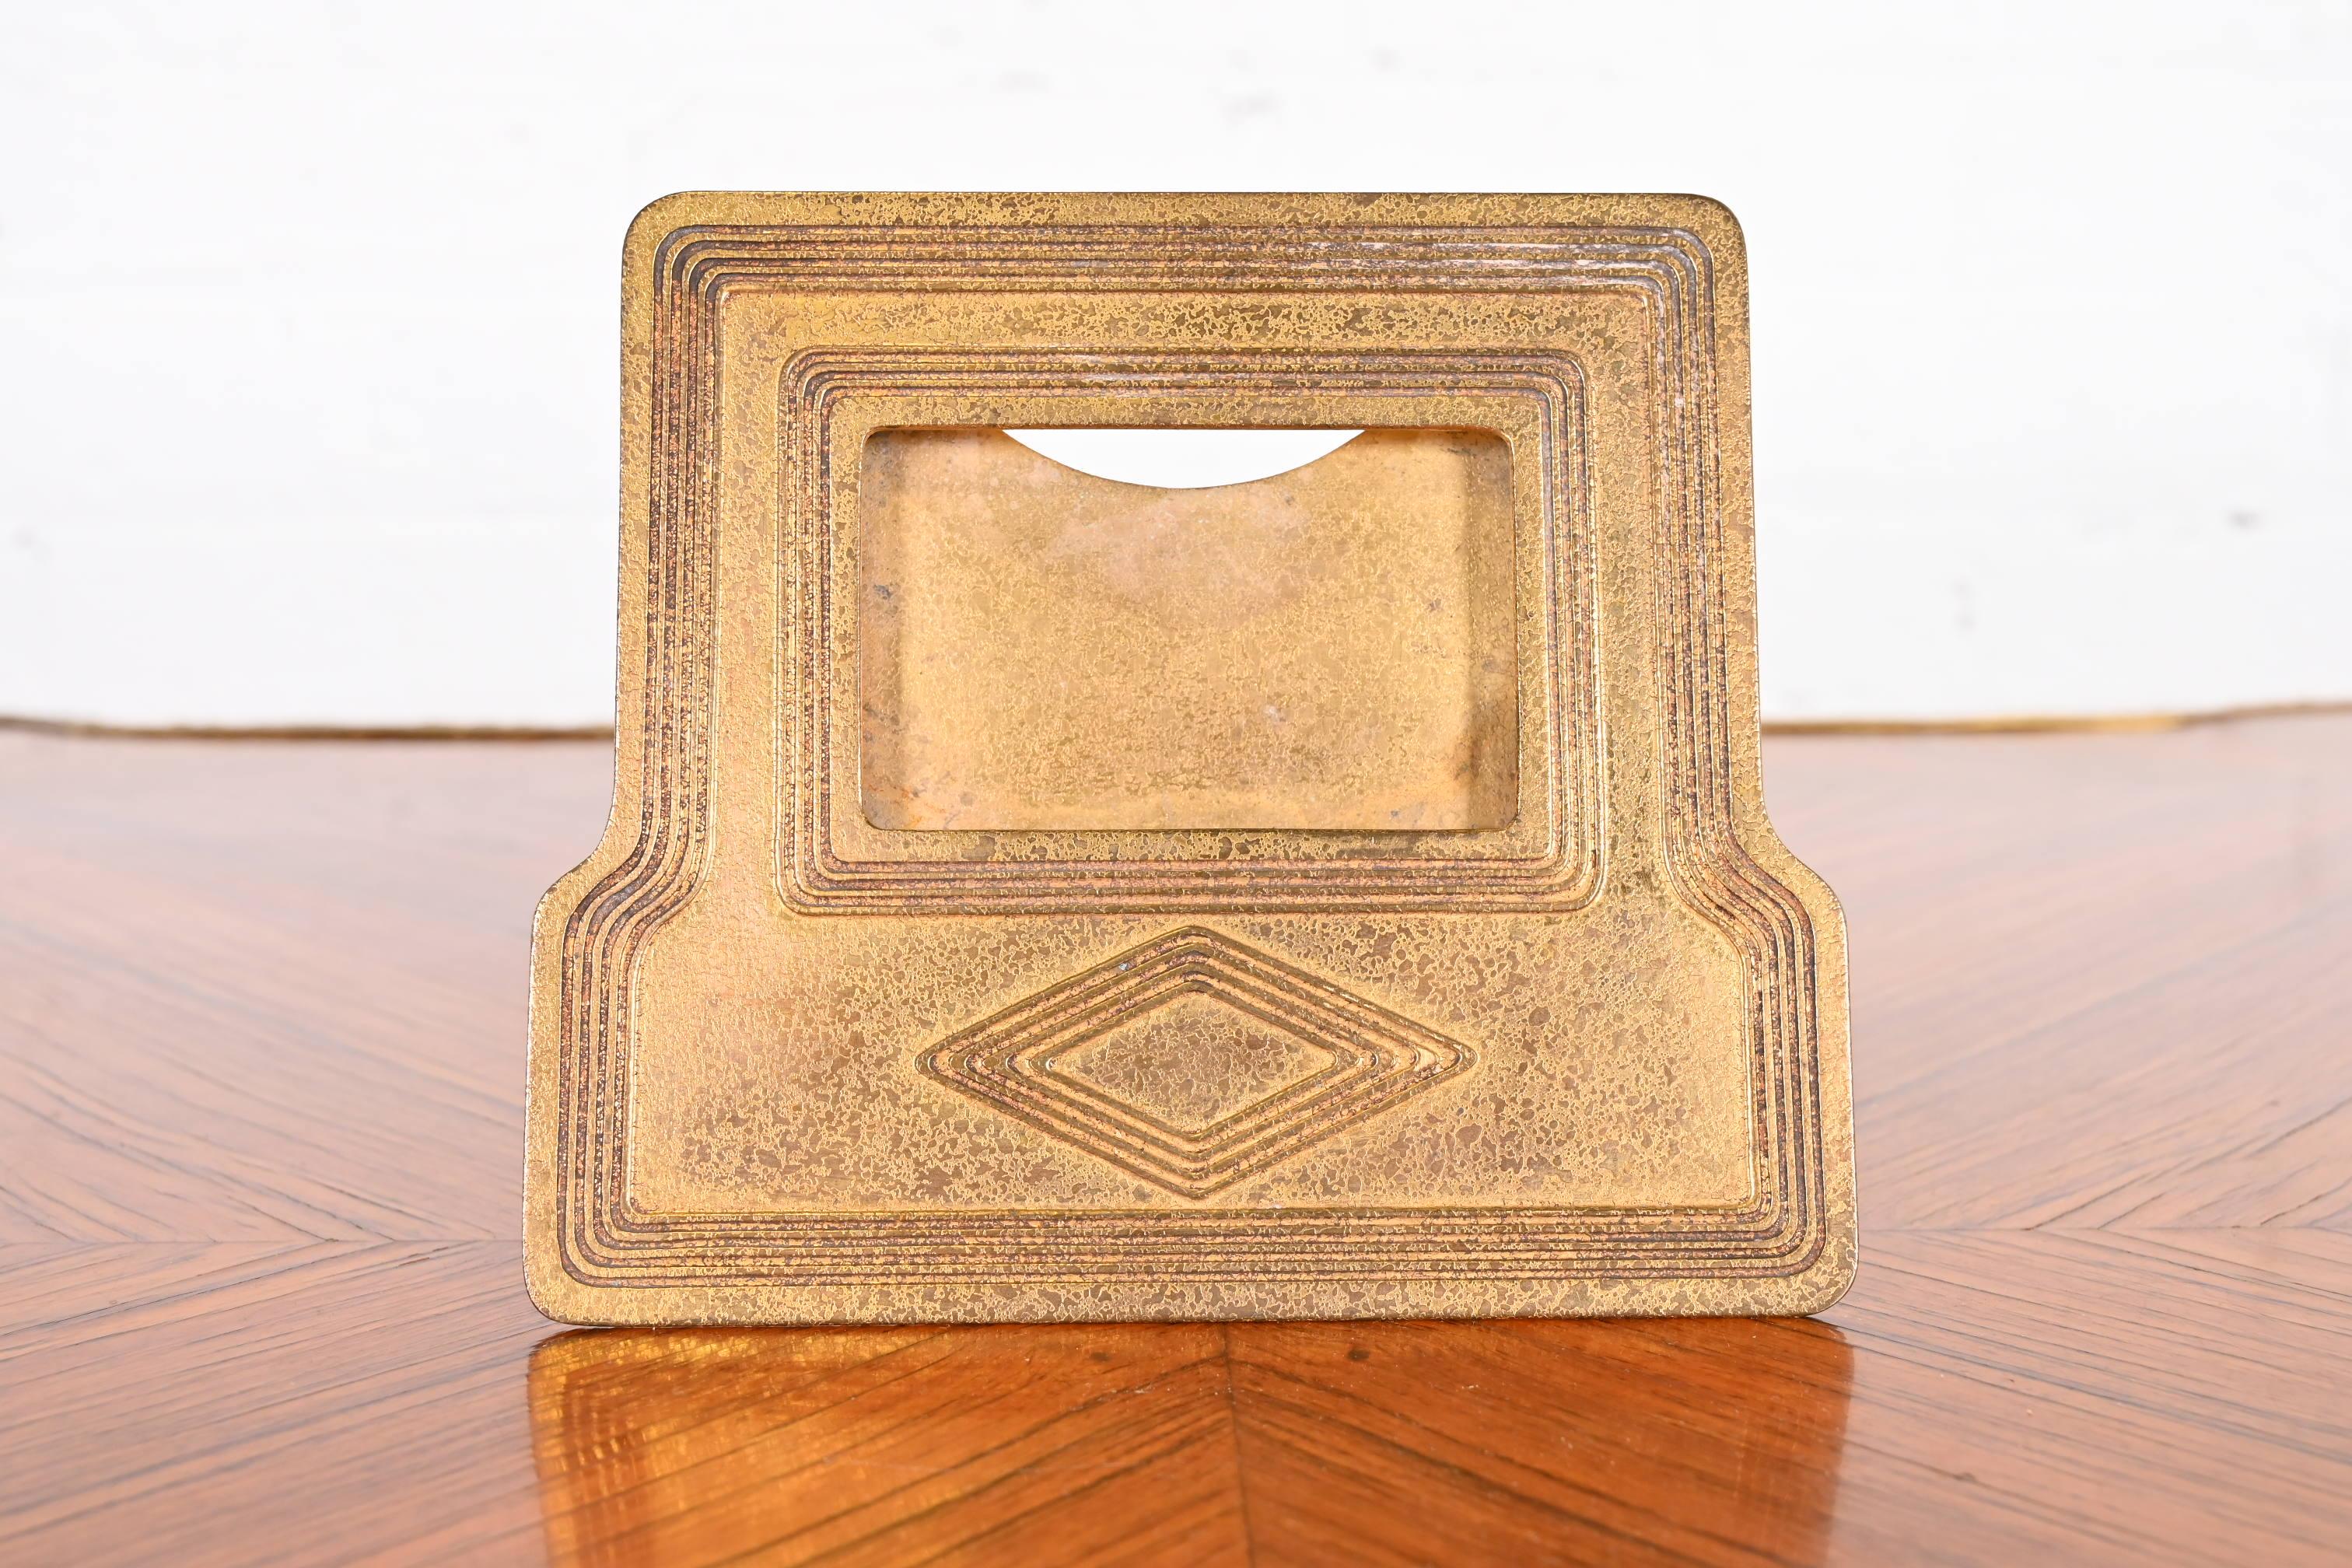 Ein prächtiger antiker vergoldeter Bronze-Tischkalenderrahmen oder Bilderrahmen im Graduate-Muster

Von Tiffany Studios (signiert en verso)

New York, USA, Anfang des 20. Jahrhunderts

Maße: 6,5 